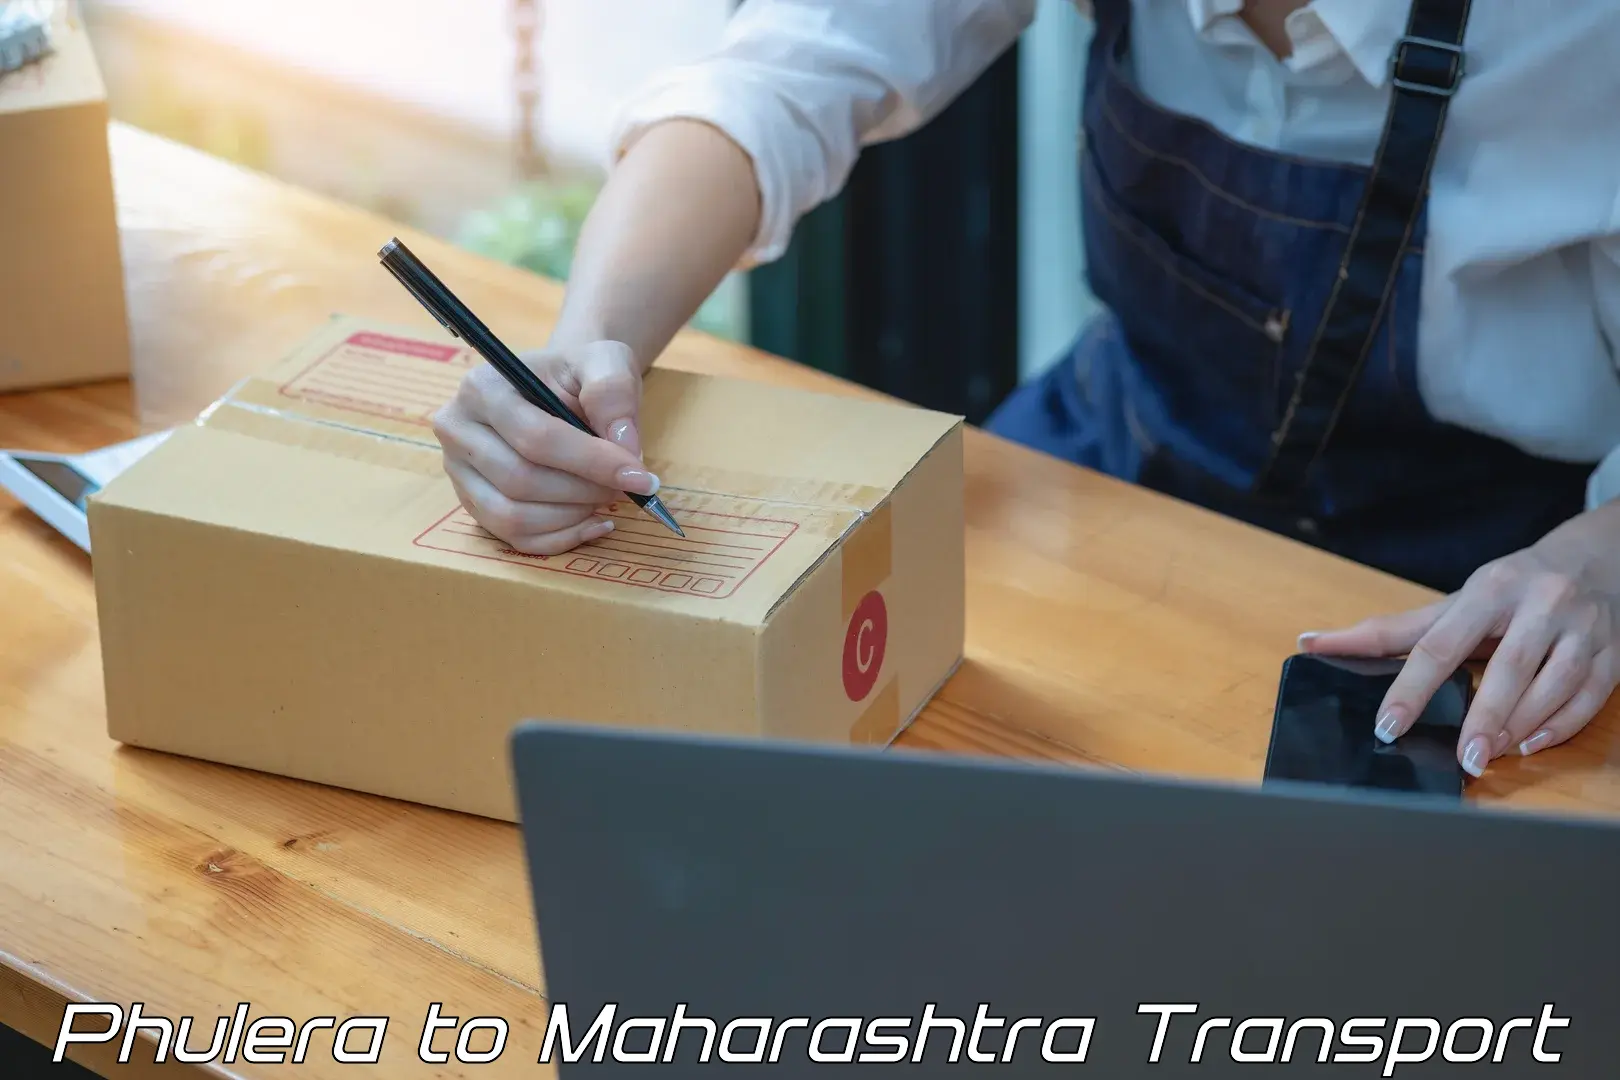 Furniture transport service Phulera to Maharashtra